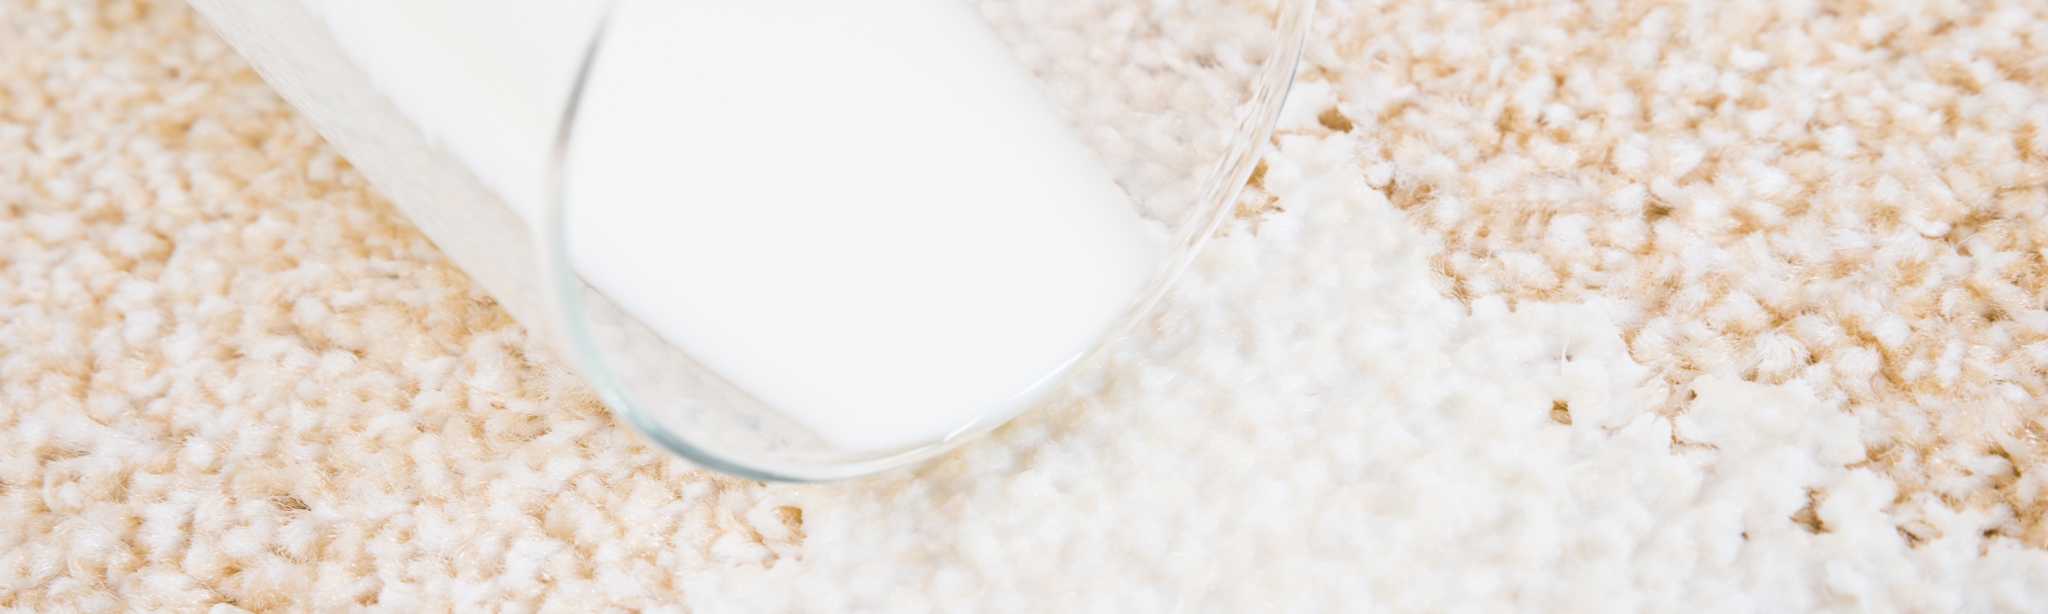 Glass of milk spilling on carpet